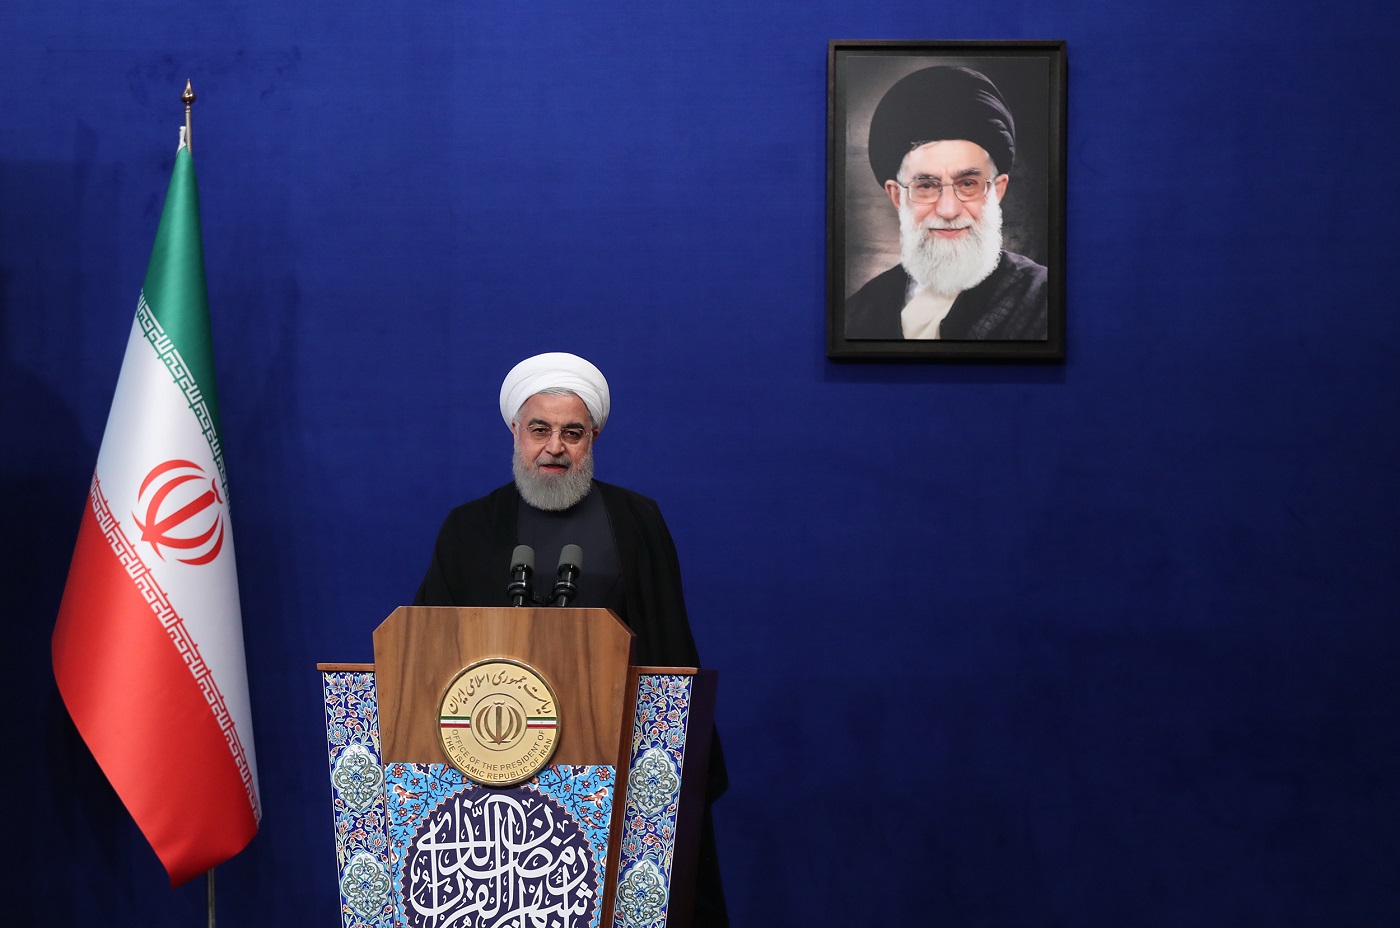 صدای ذلت و تسلیم از ایران و ملت بلند نخواهد شد